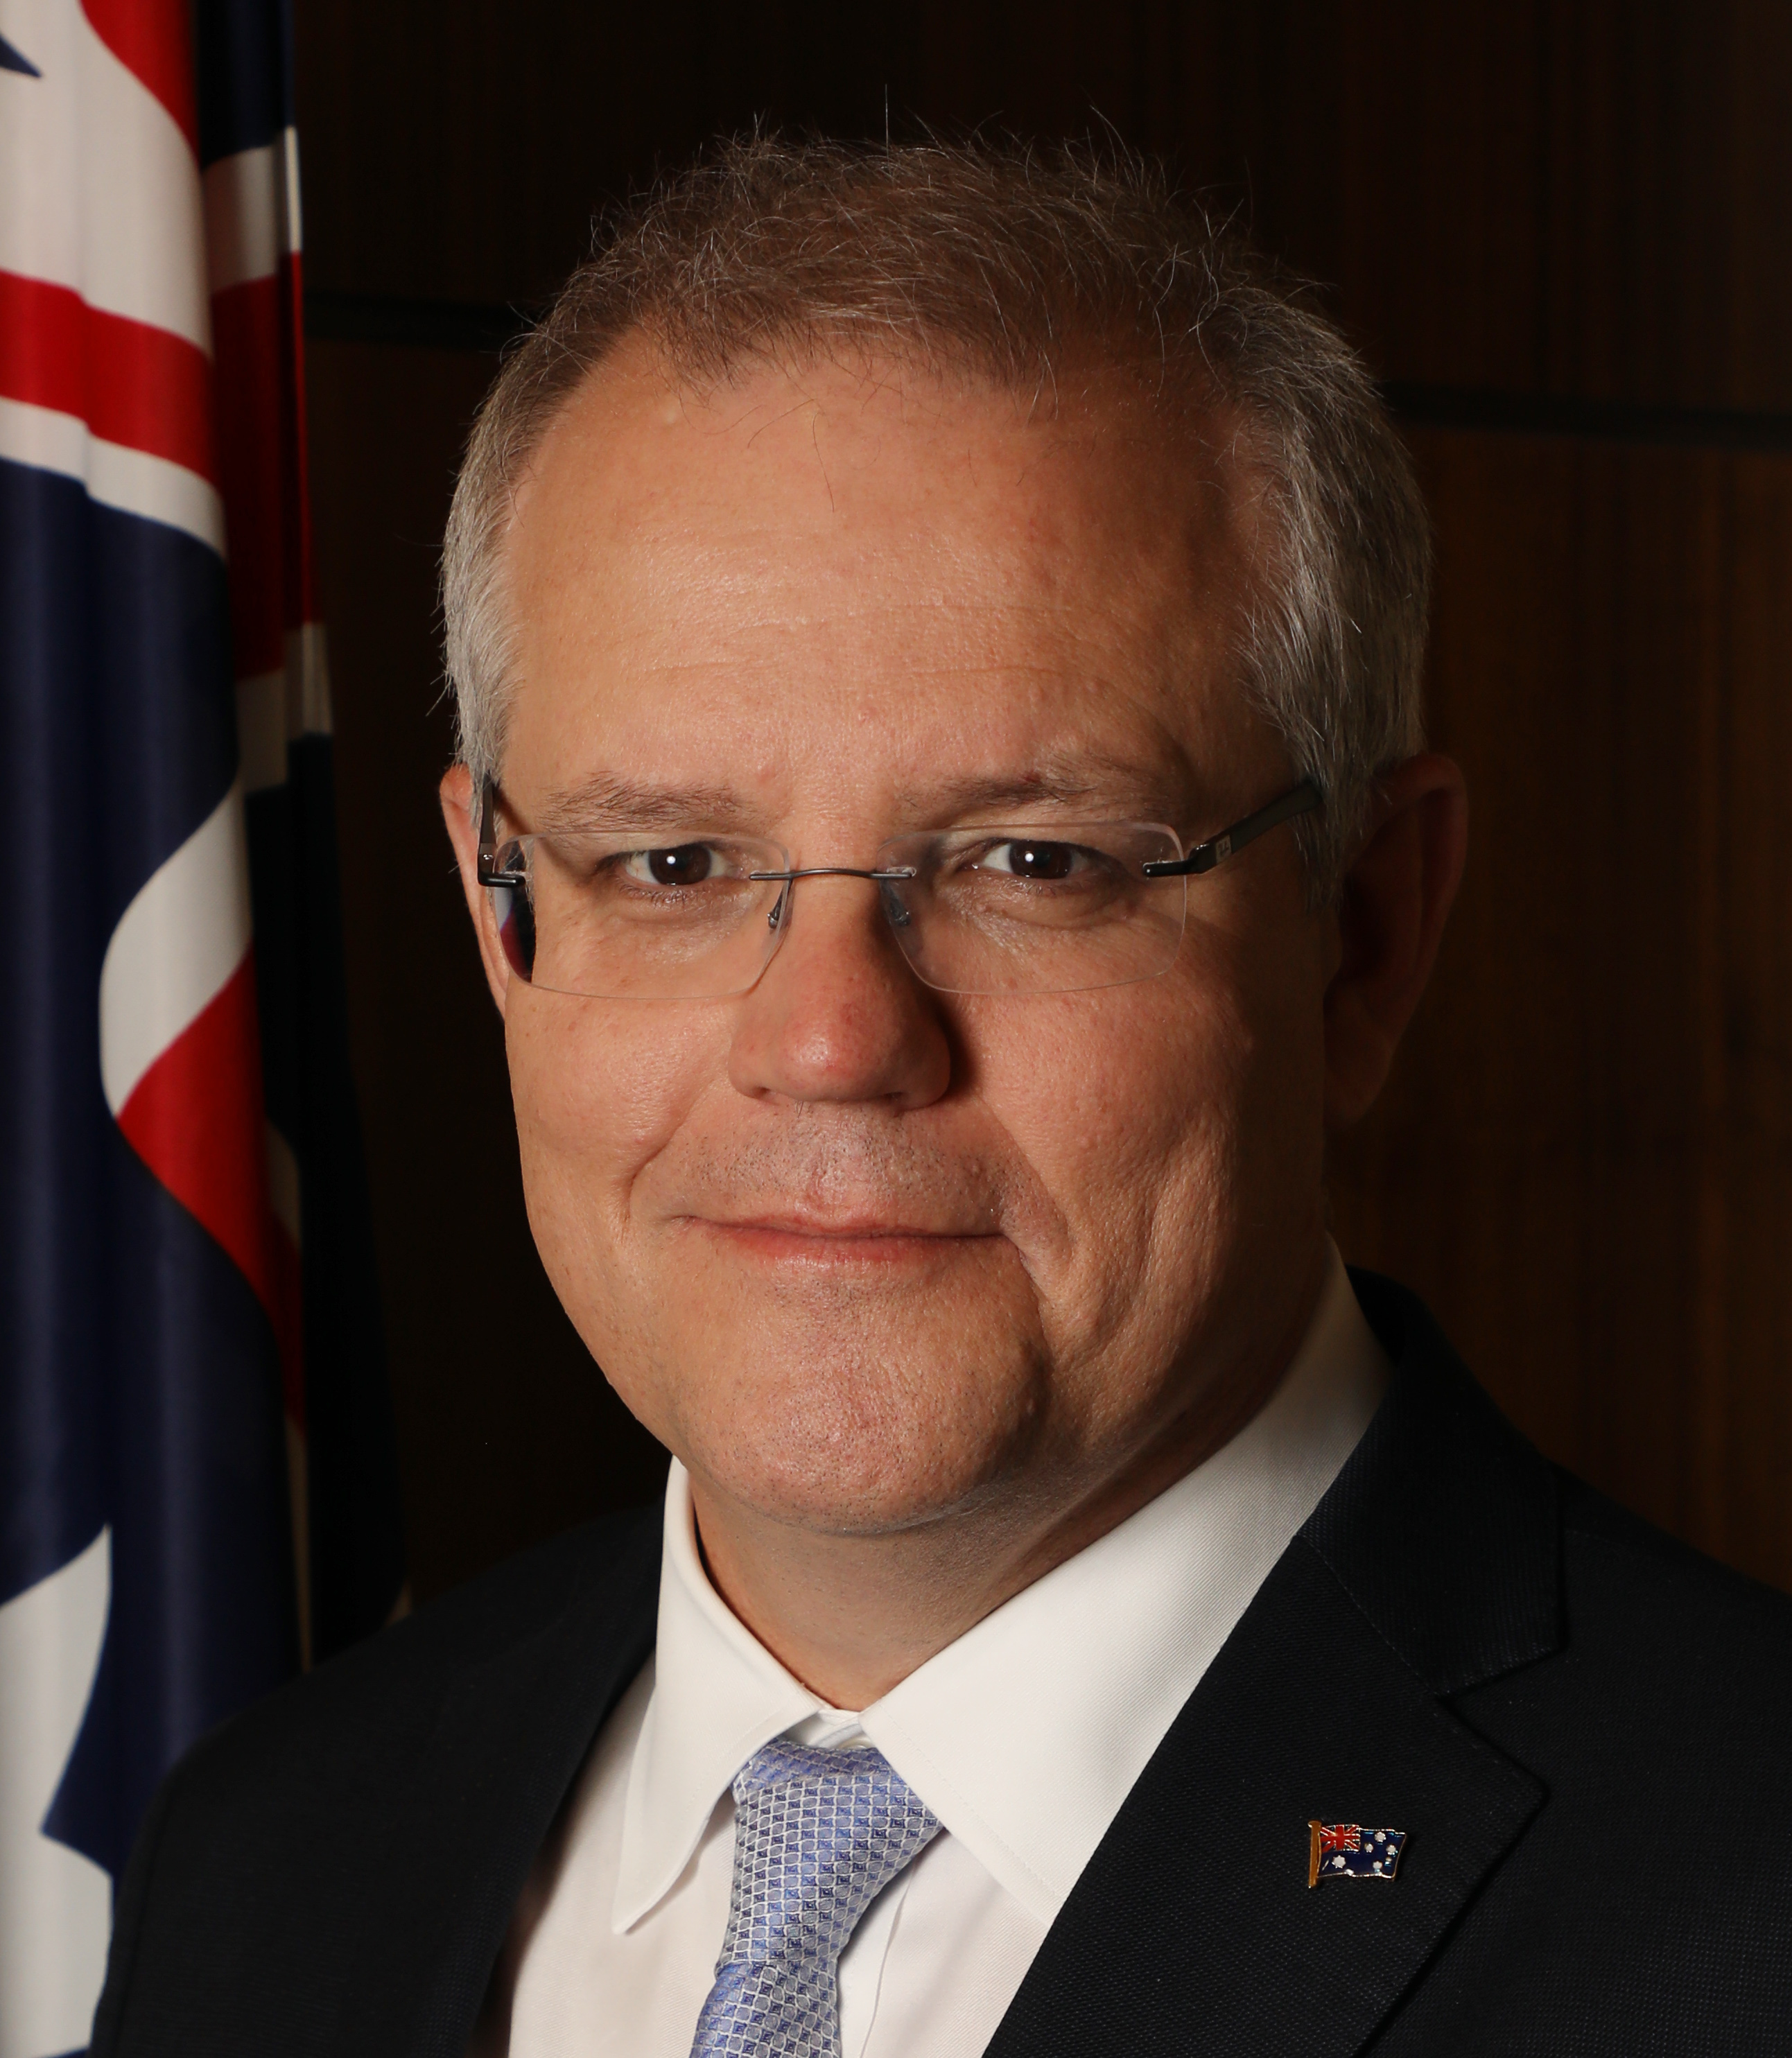 Scott Morrison - Prime Minister of Australia